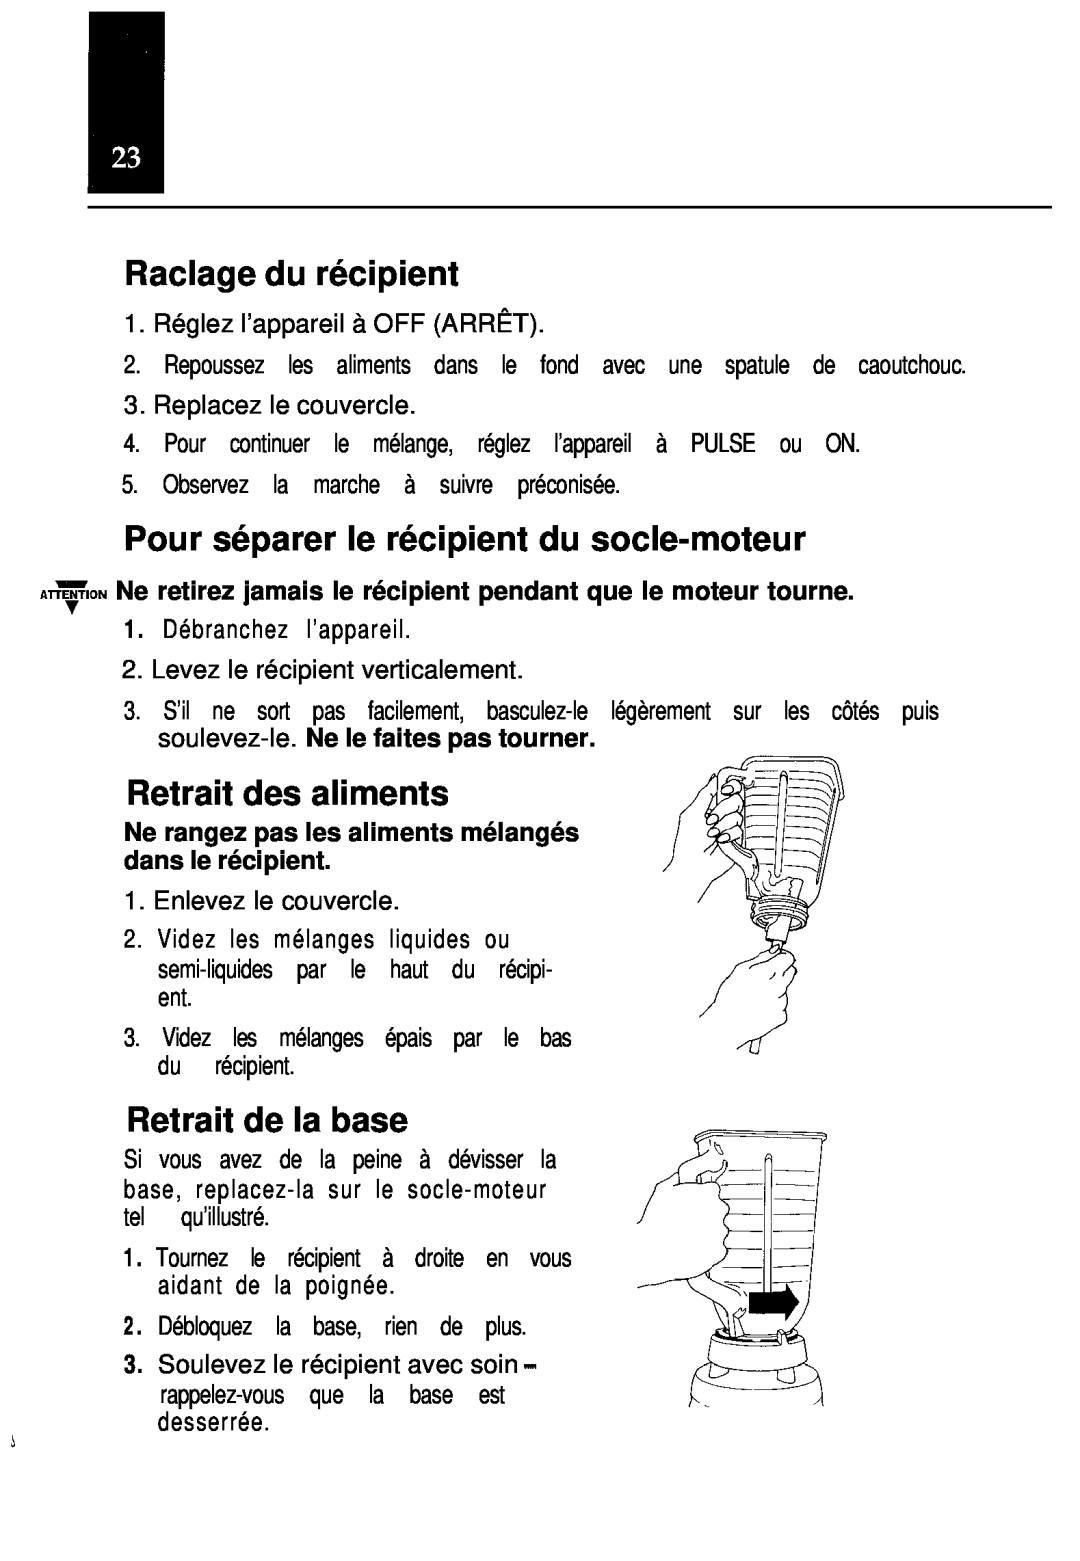 Oster Classic blender manual Raclage du récipient, Pour séparer le récipient du socle-moteur, Retrait des aliments 